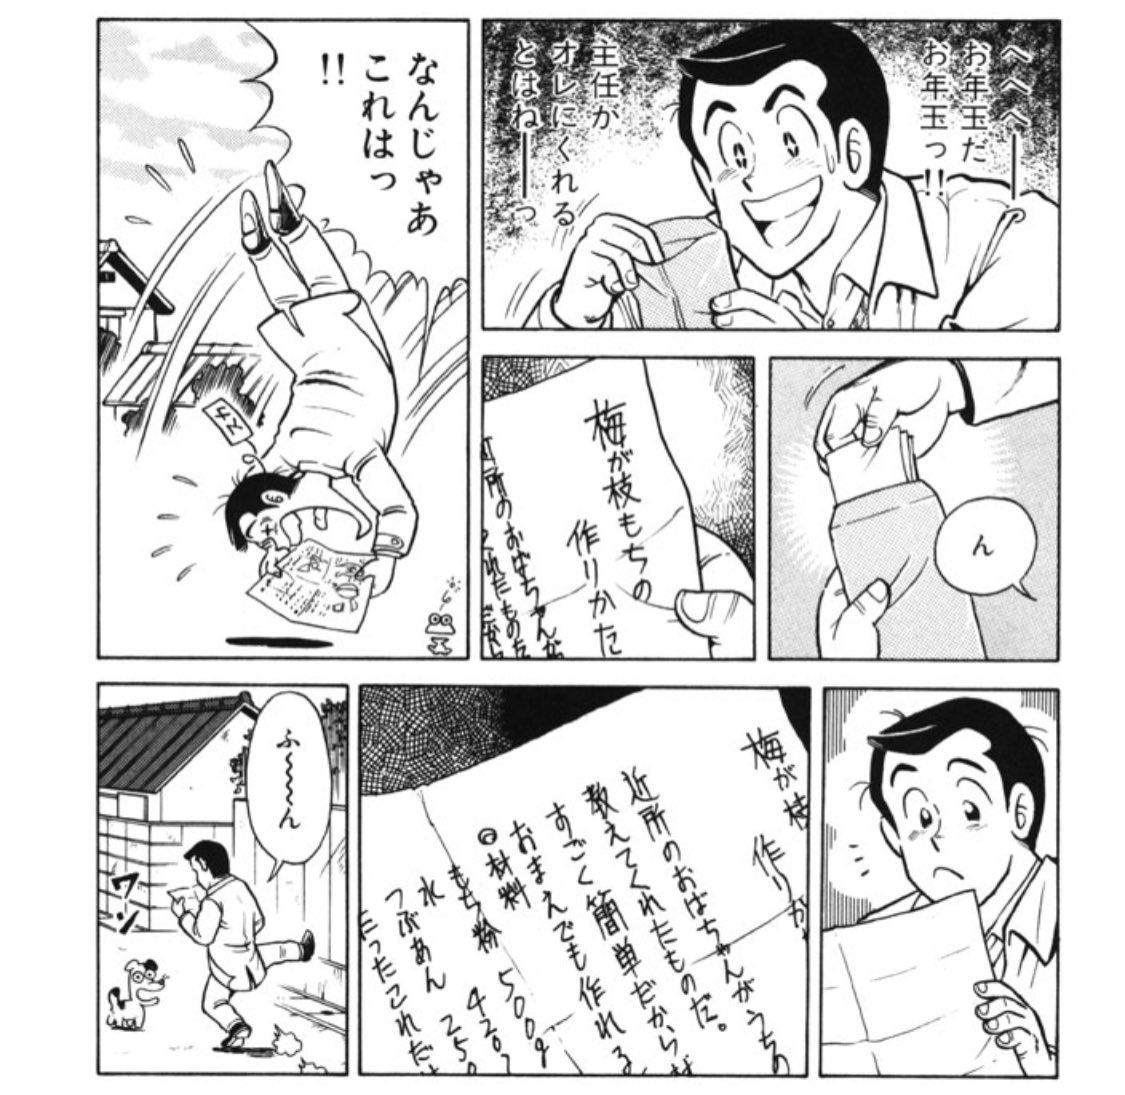 オダ Oda さんの漫画 1552作目 ツイコミ 仮